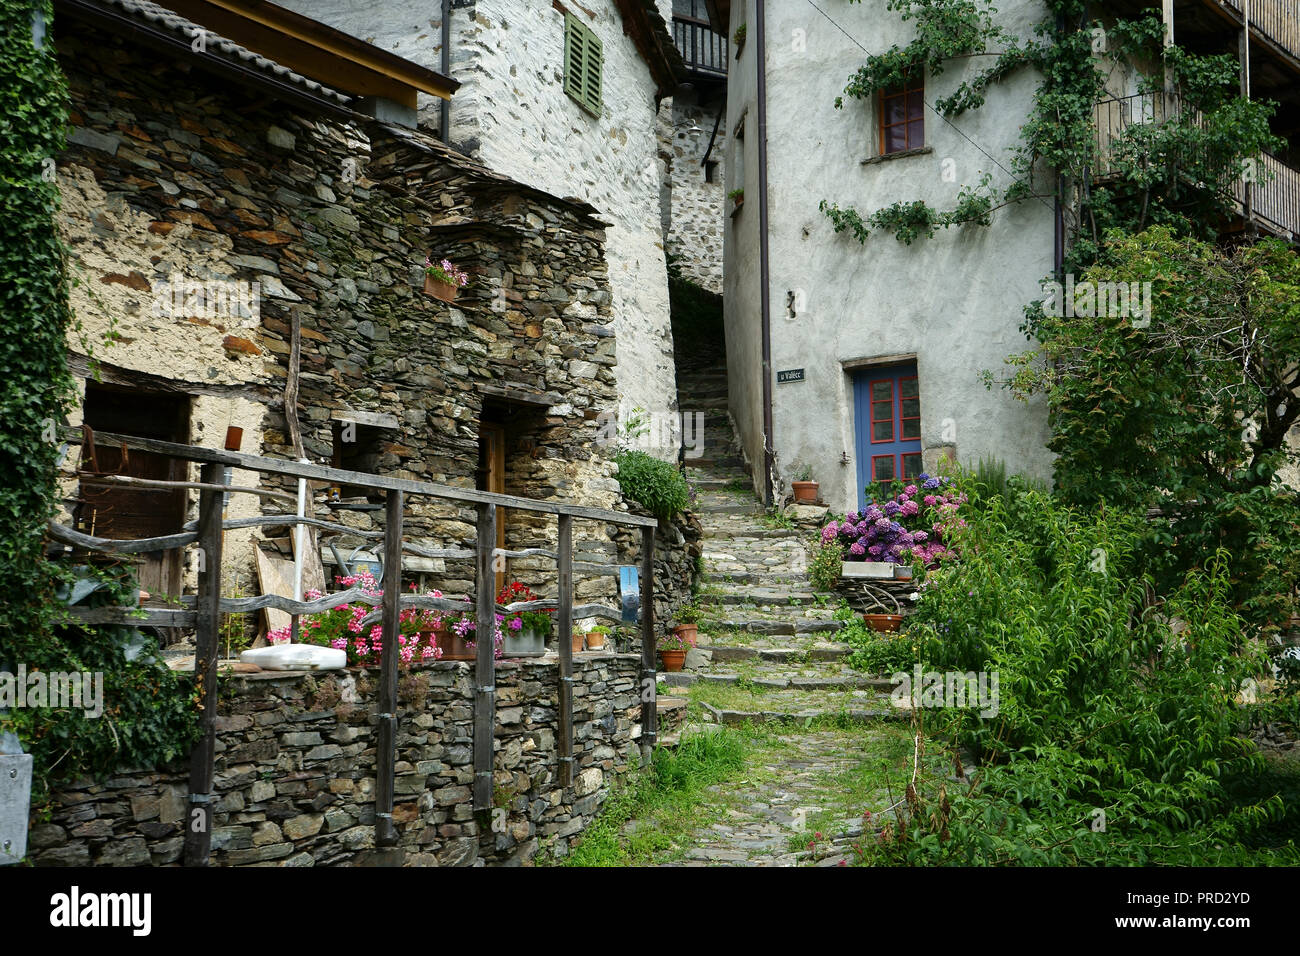 Die alten Häuser und die schmale Treppe in der Stadt Indemini, Tessin, Schweiz Stockfoto